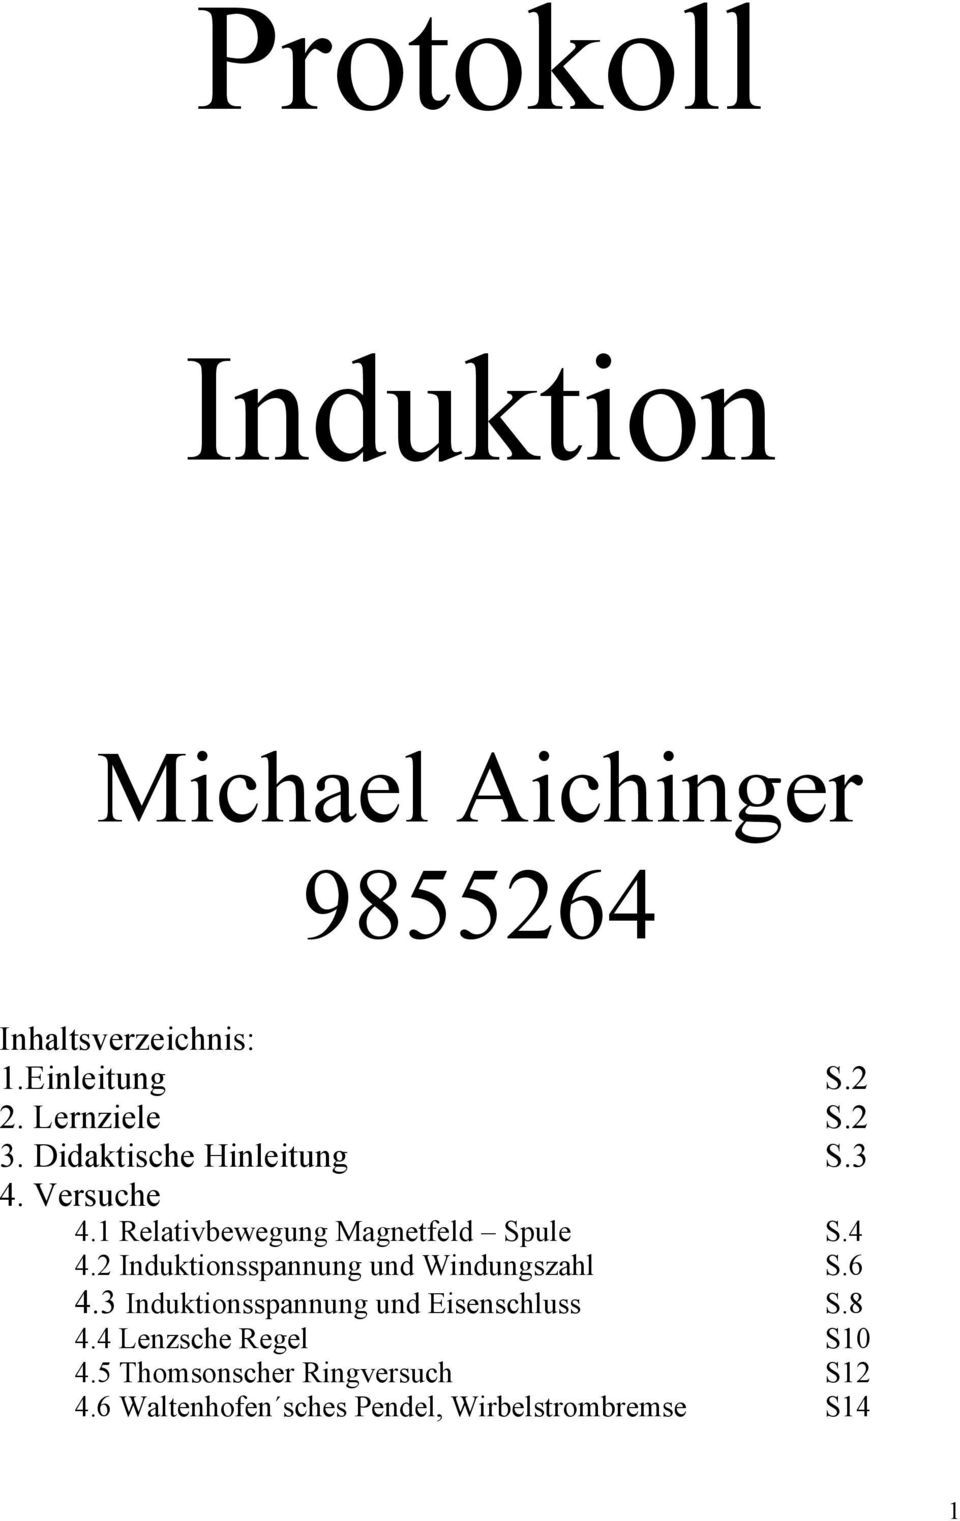 4 4.2 Induktionsspannung und Windungszahl S.6 4.3 Induktionsspannung und Eisenschluss S.8 4.